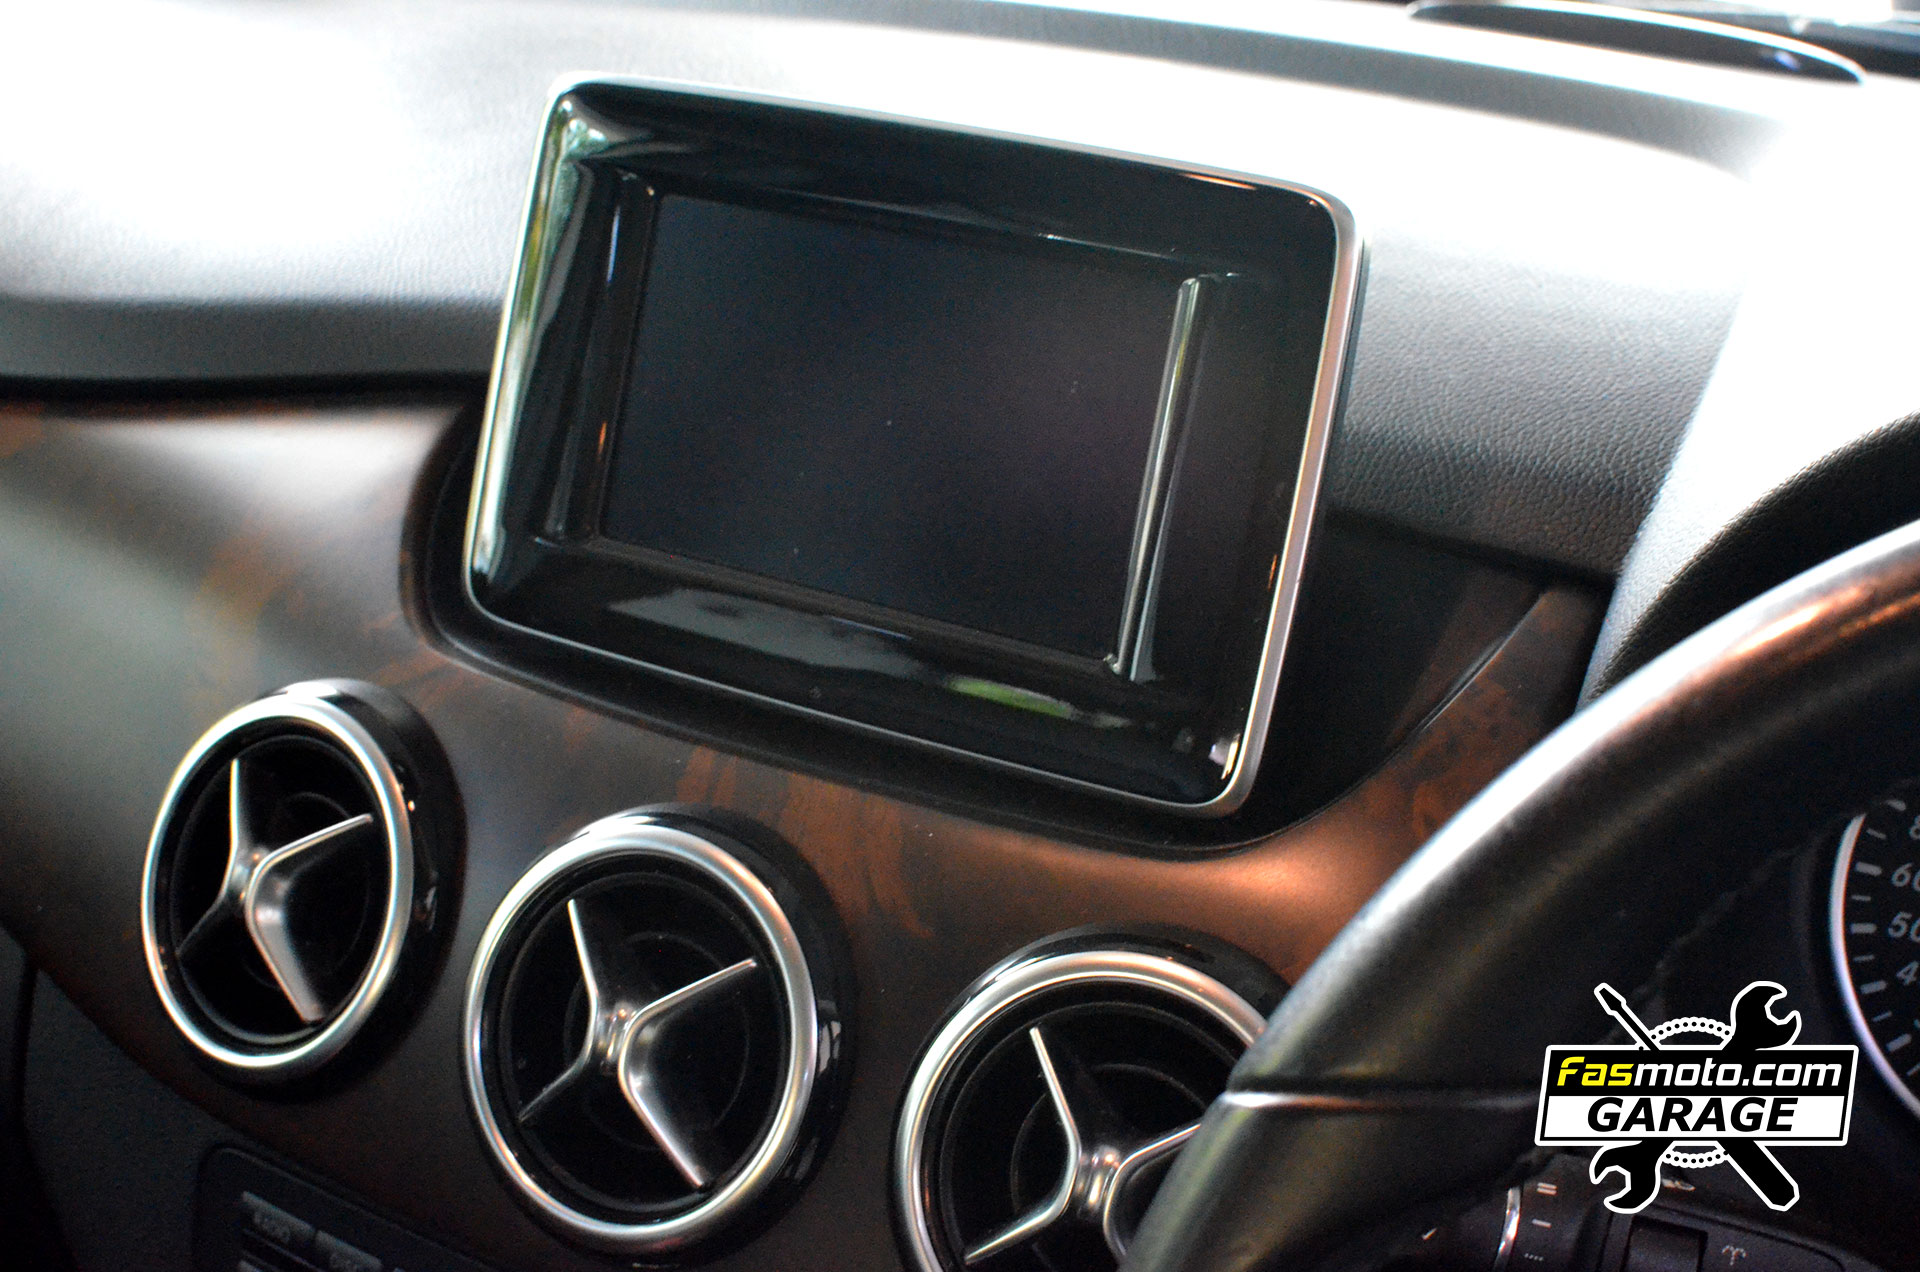 Mercedes Benz B200 B Class Rear Parking Camera install